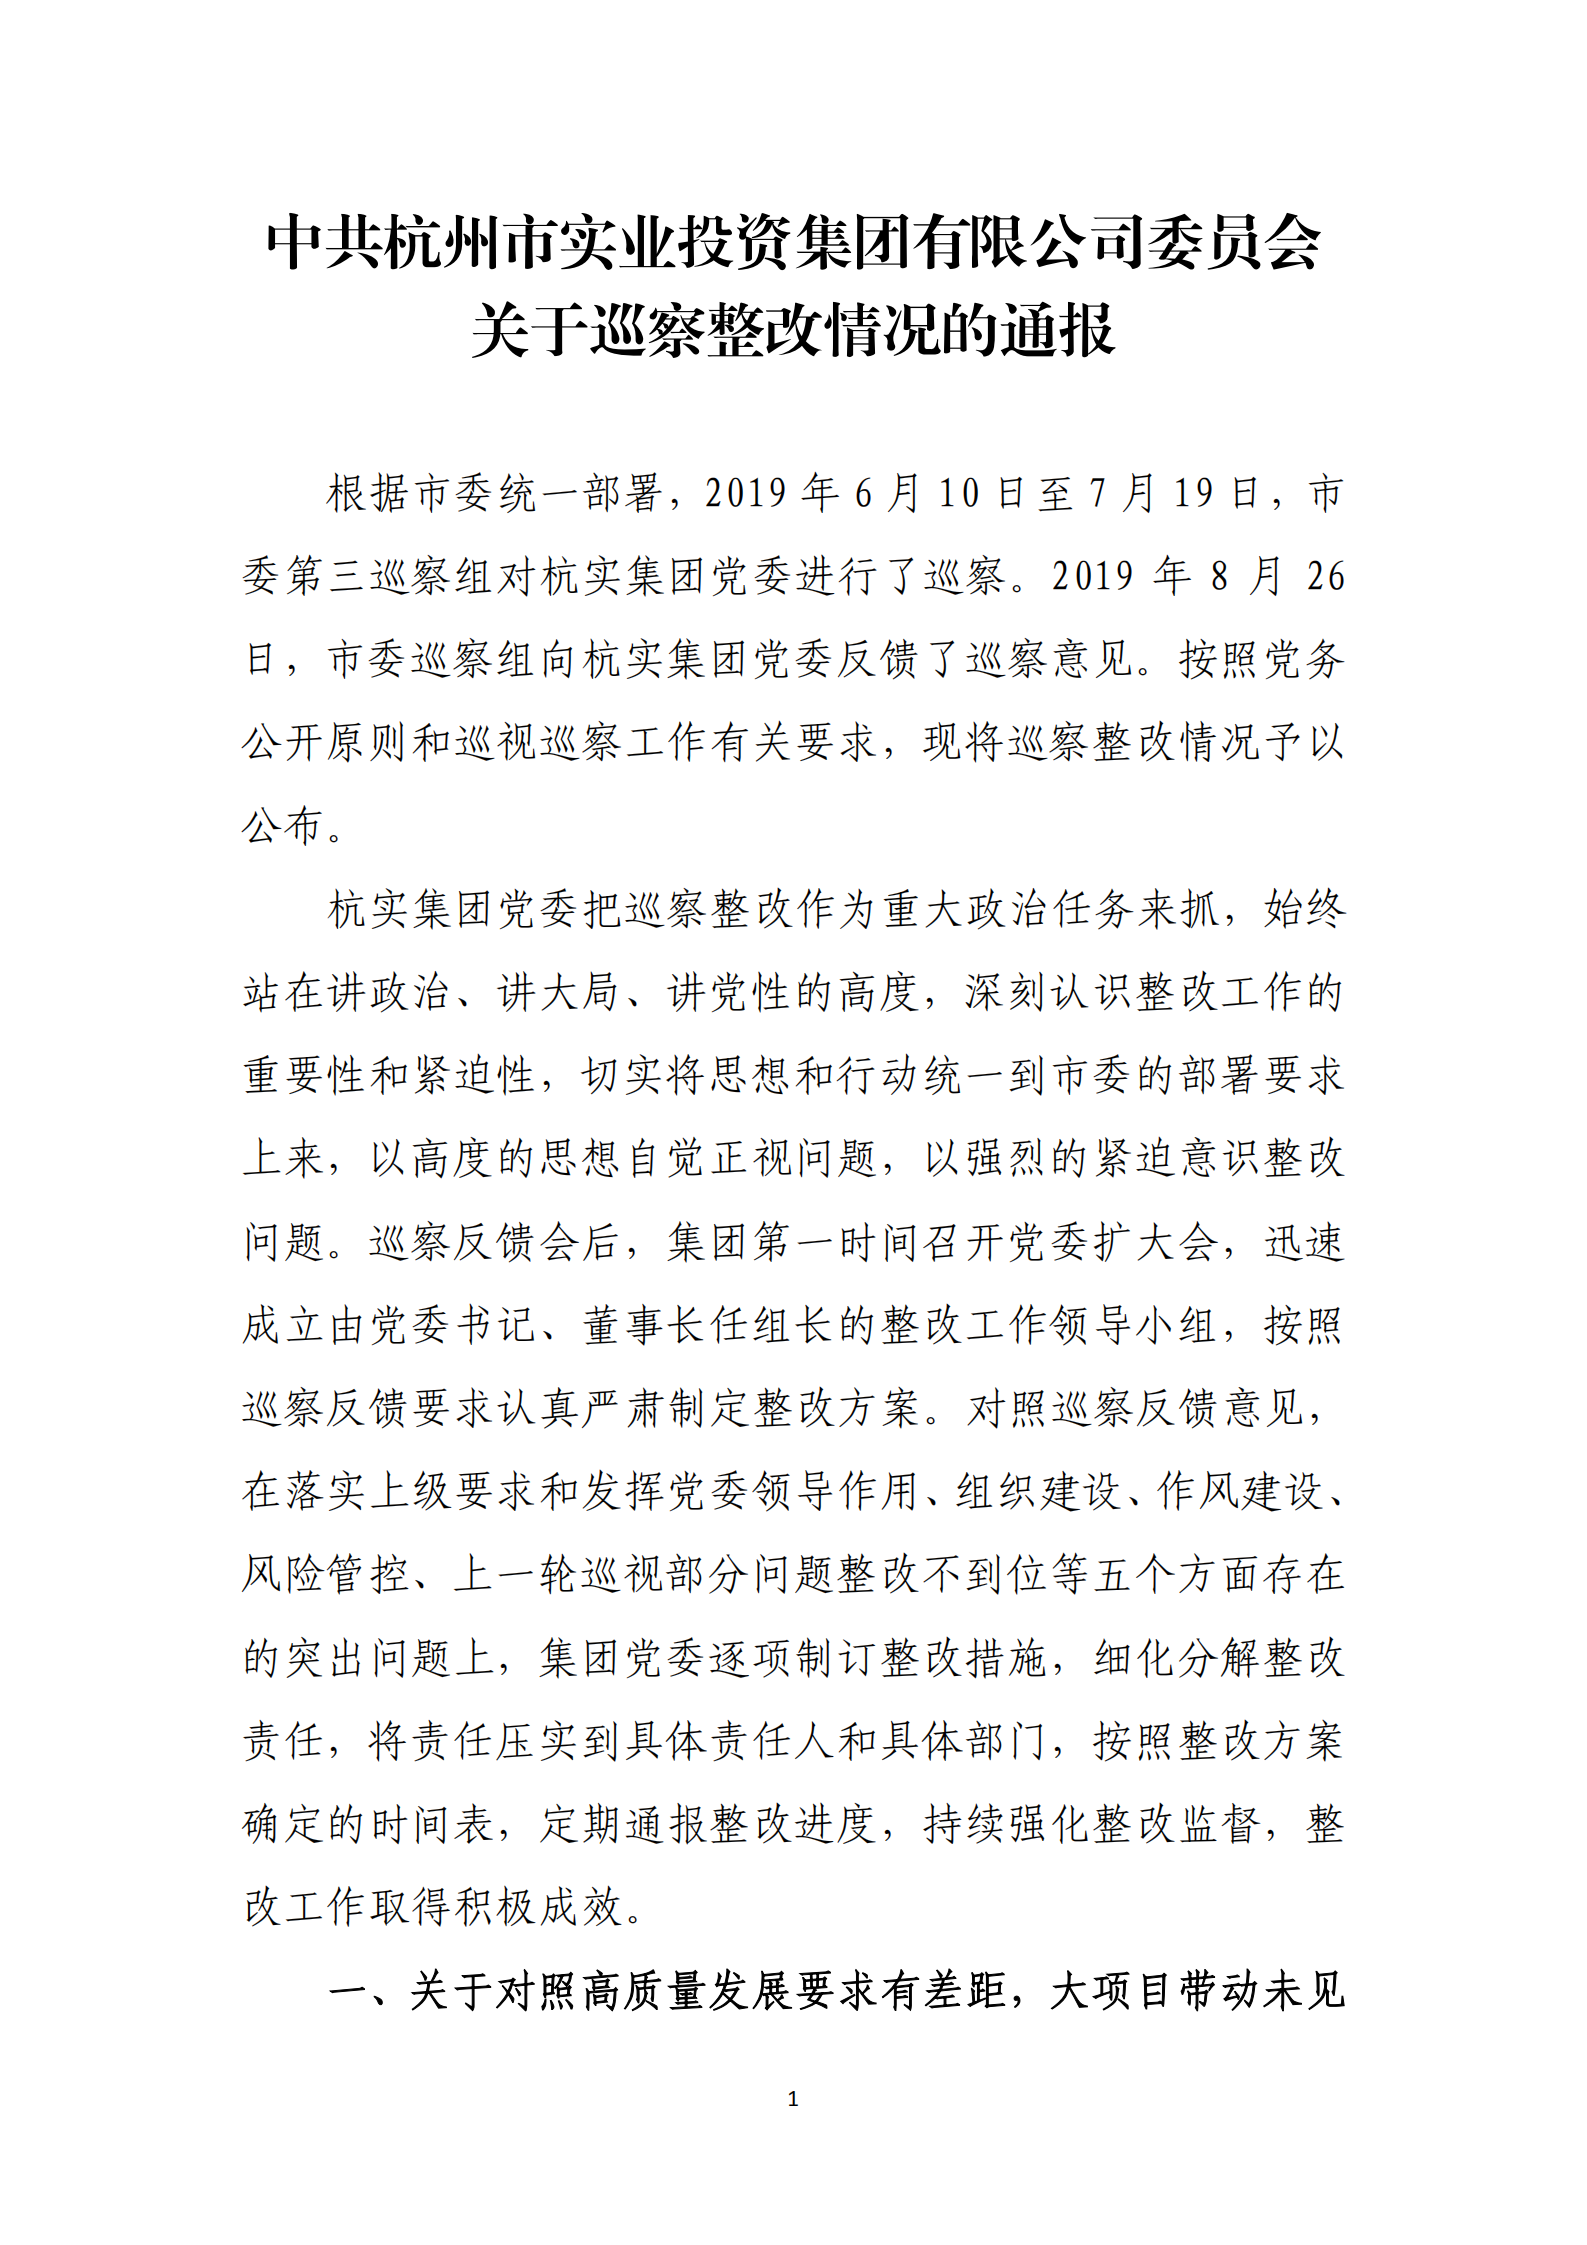 杭实集团党委关于巡察整改情况的通报_00.png